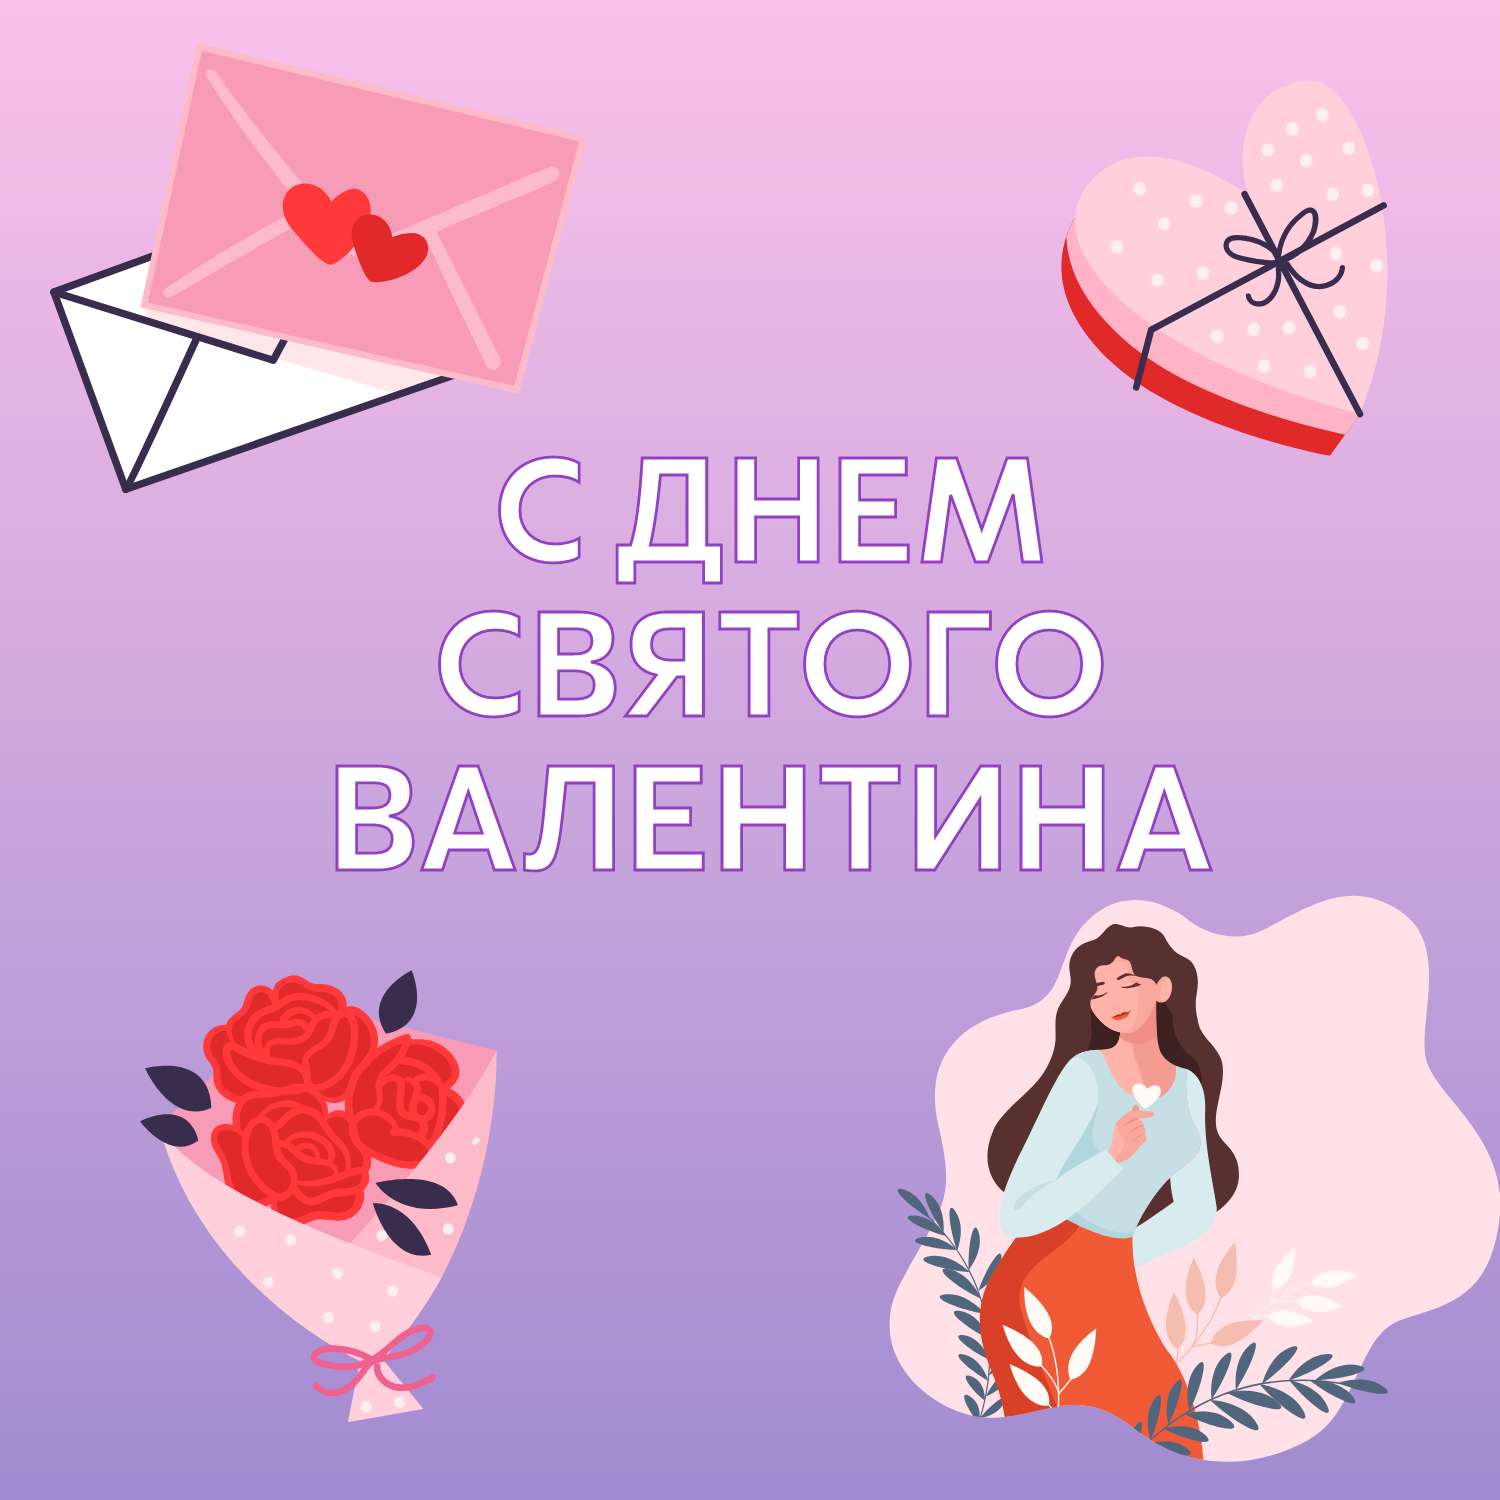 Милая открытка с 2D рисунками конвертов с сердцами, конфетами и цветами в день святого Валентина